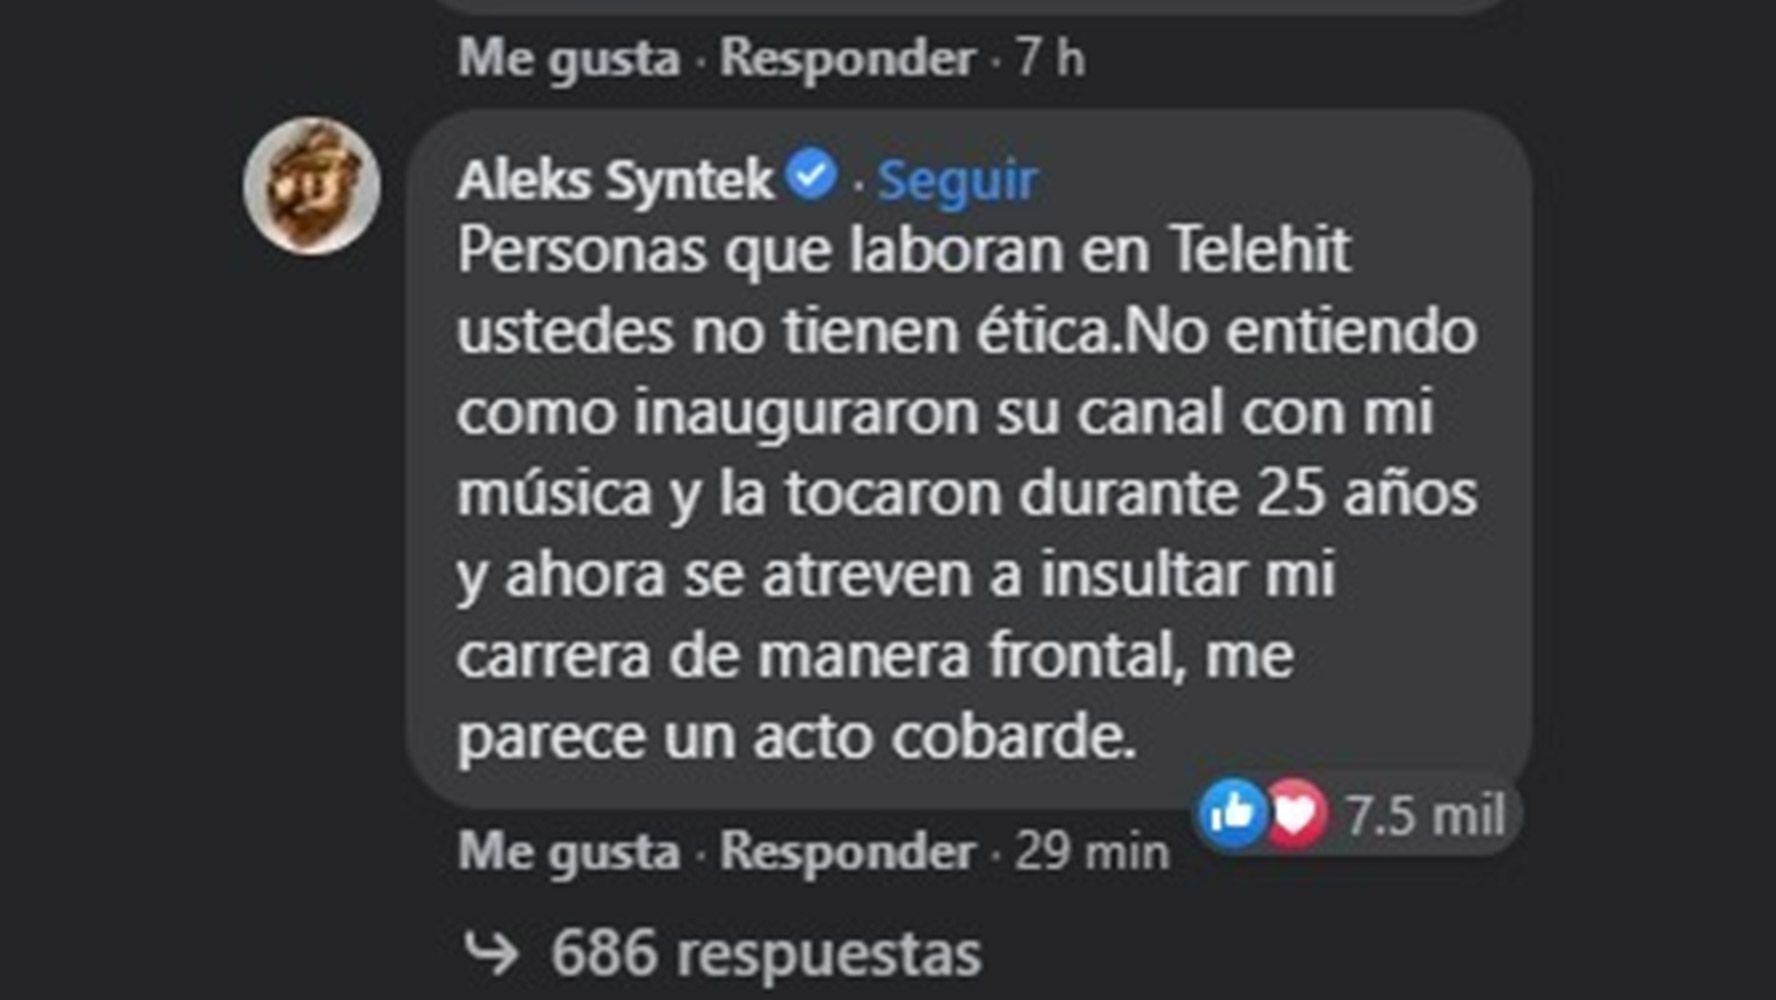 Más de siete mil personas reaccionaron a la respuesta de Aleks Syntek, quien contestó en la publicación original.